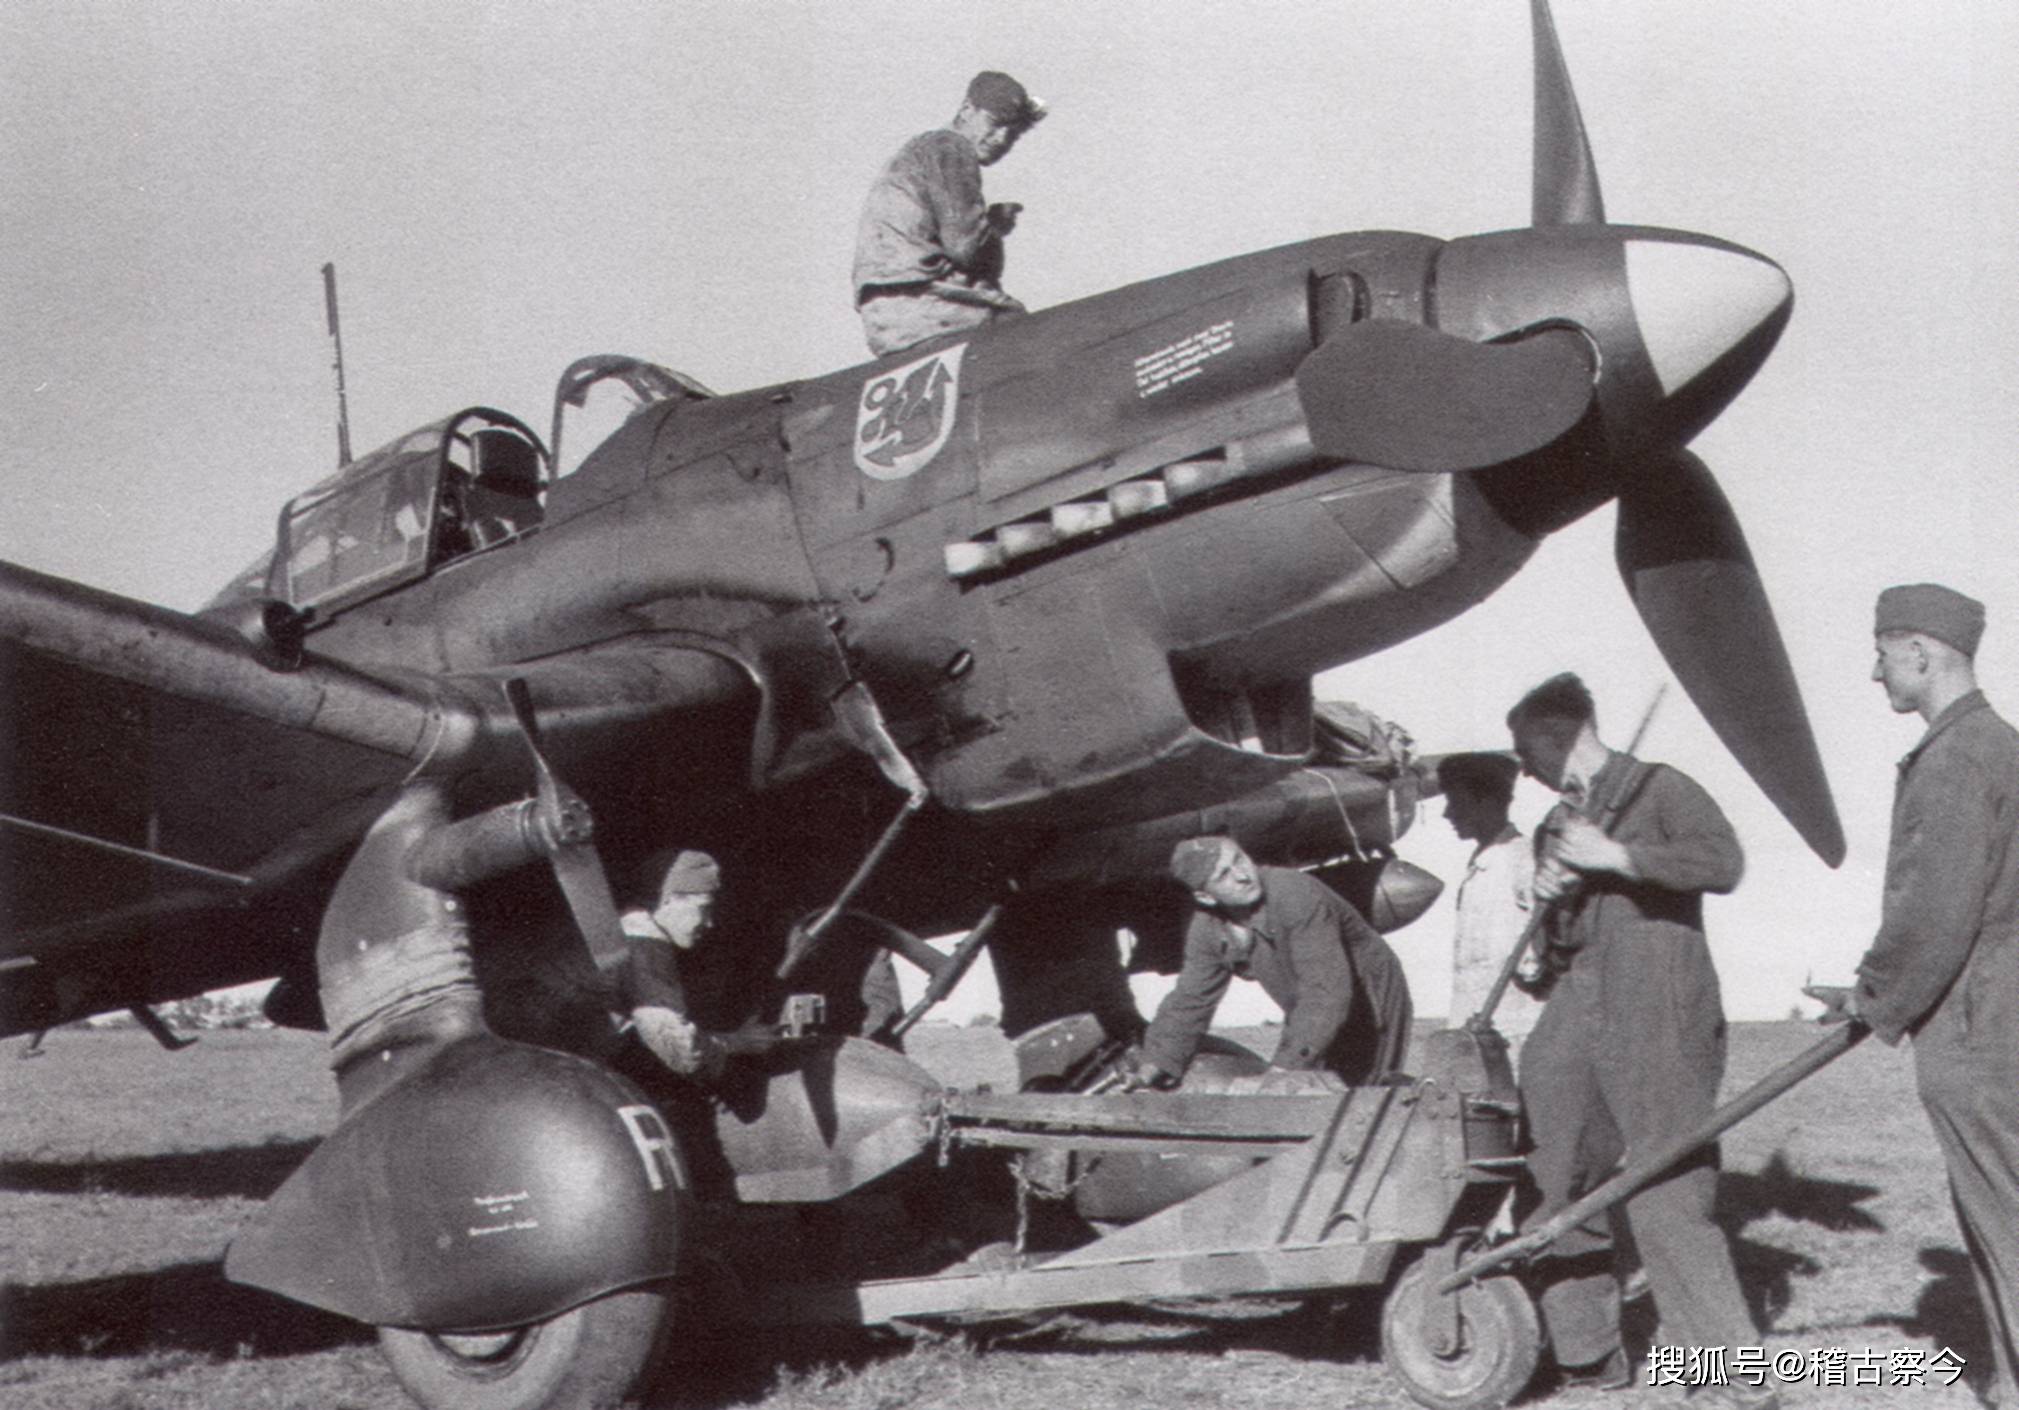 原创斯图卡俯冲轰炸机被称为尖啸死神二战盟军士兵的心理阴影